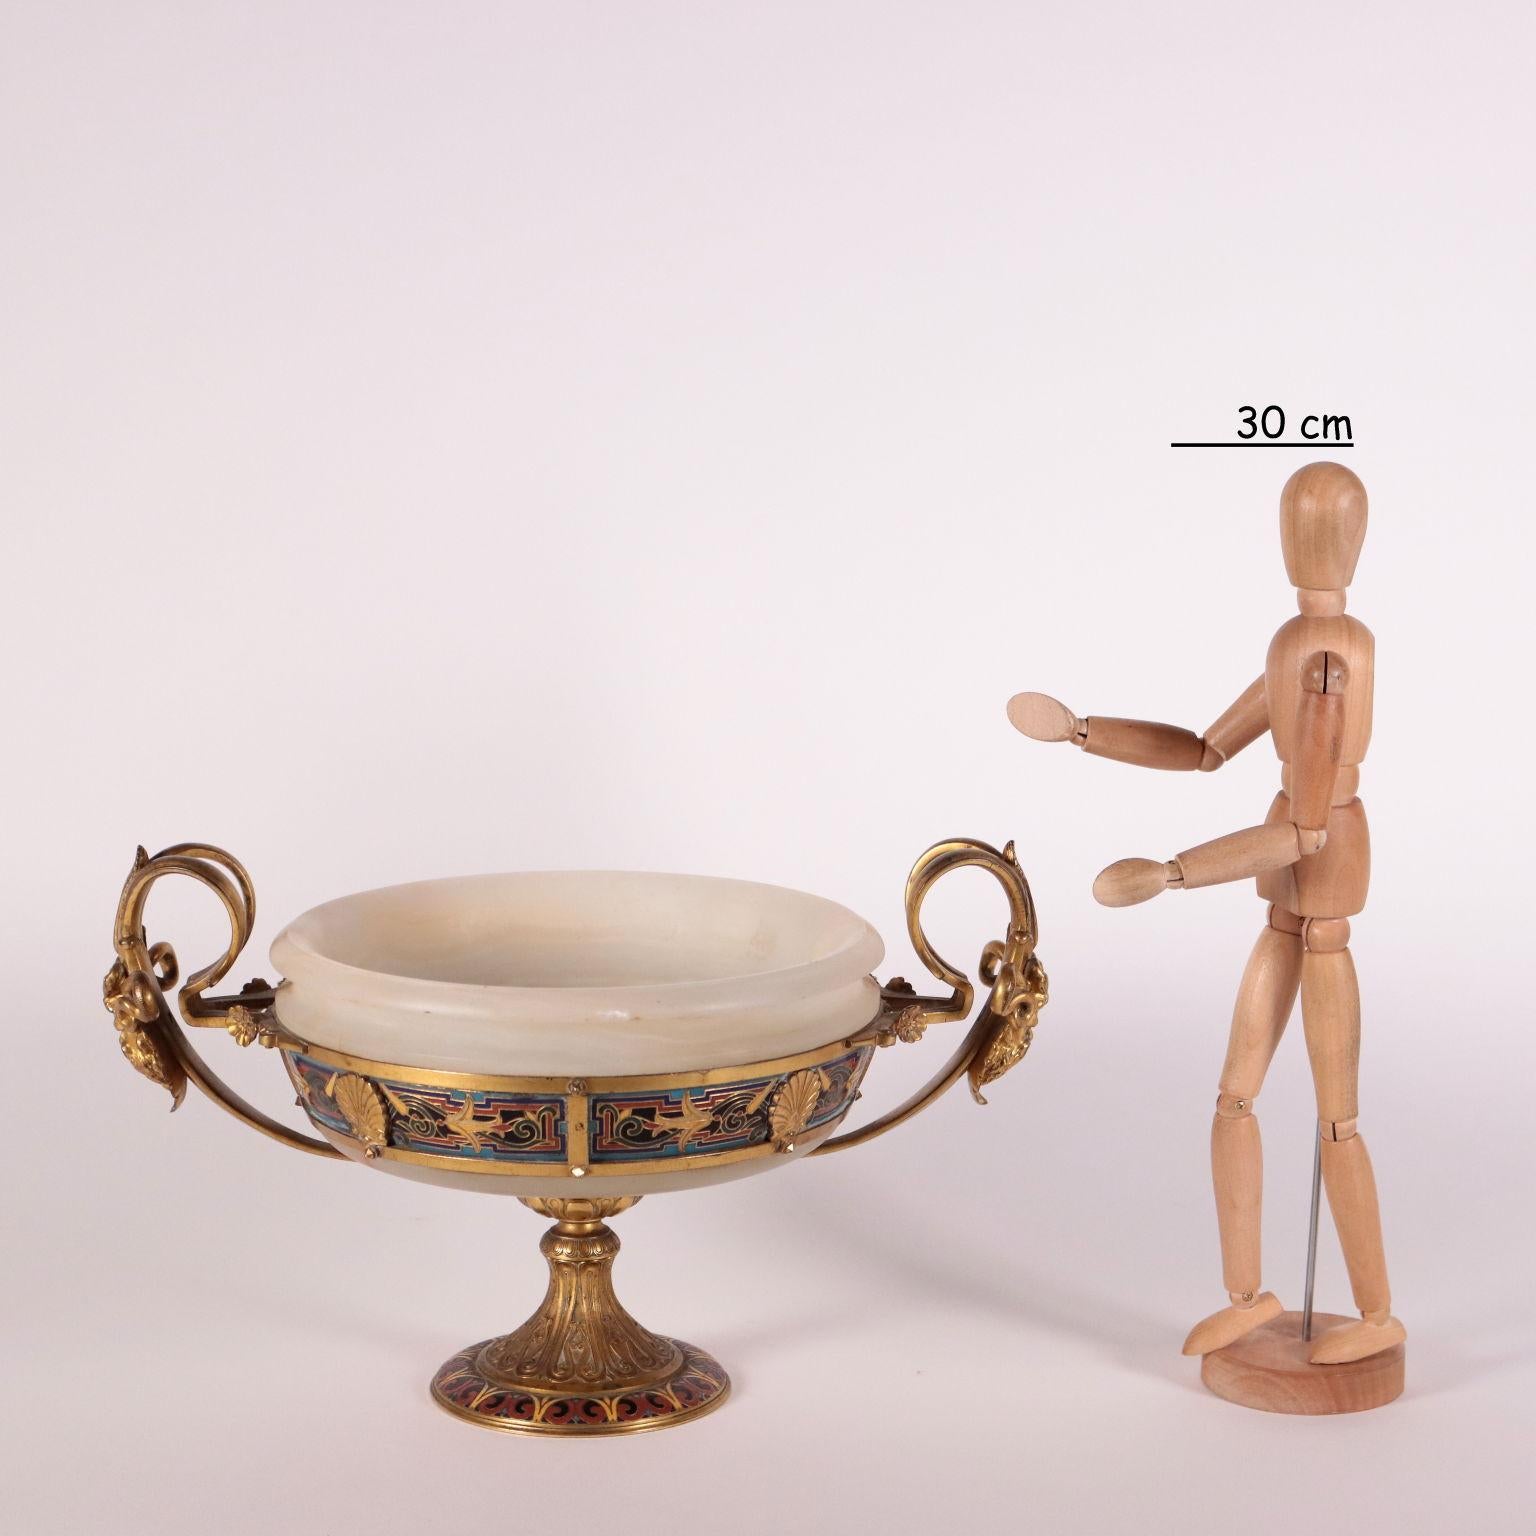 Alabasterkelch, der von einem vergoldeten Bronzeträger gehalten wird, mit emailliertem Dekor, das mit der Champleve-Technik realisiert wurde. Der Sockel hat die Form eines umgedrehten Kelches und trägt eine kreisförmige Bronzestruktur mit